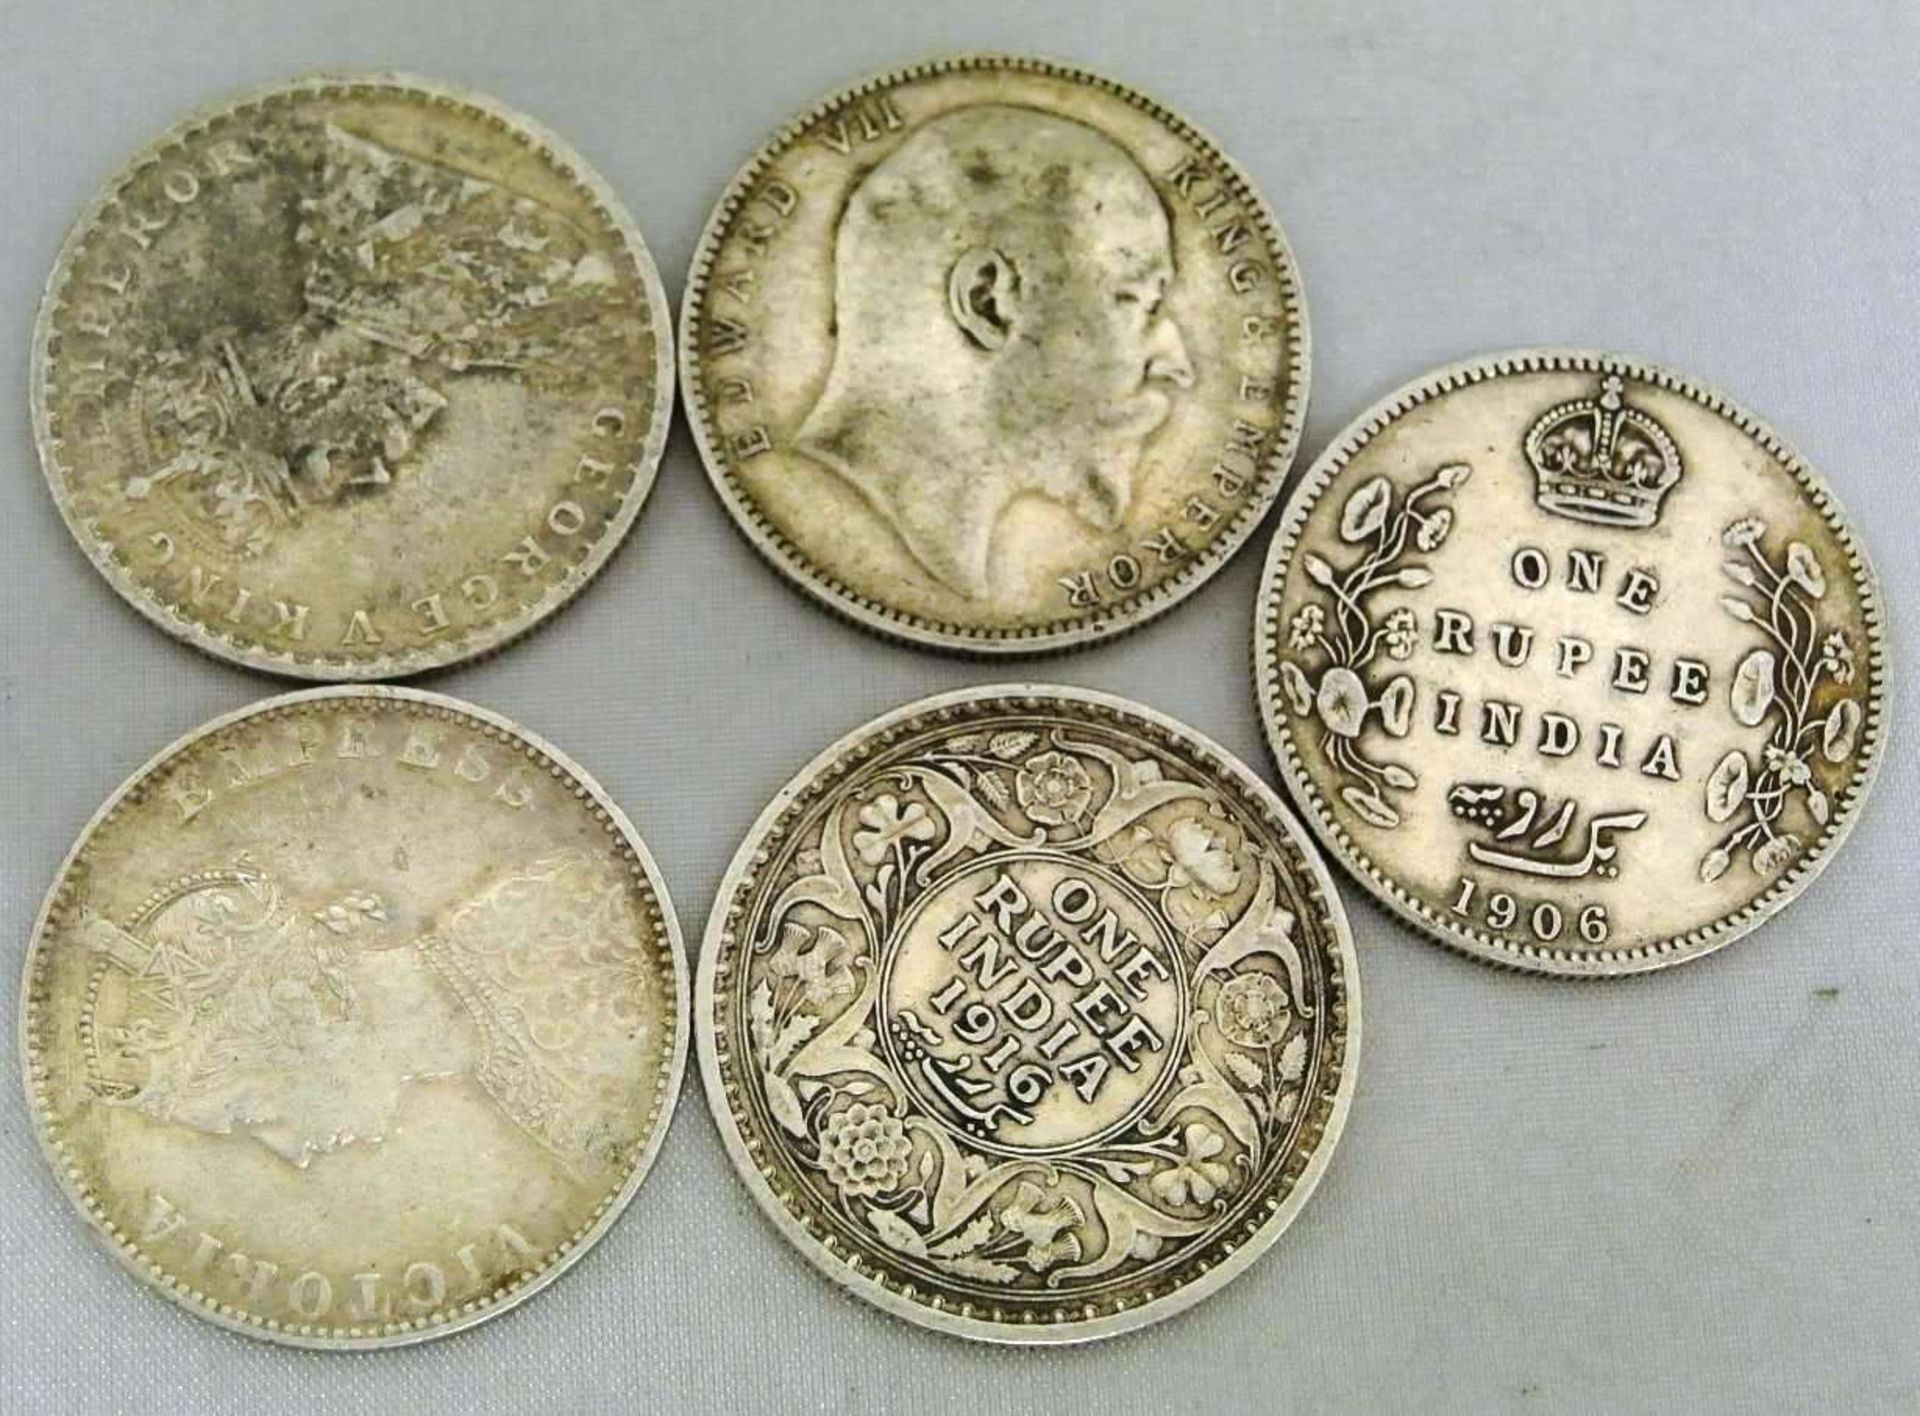 British India, 5x one Rupee von 1891 / 1905-1906 / 1915-1916, Silbermünzen. Erhaltung von sehr schön